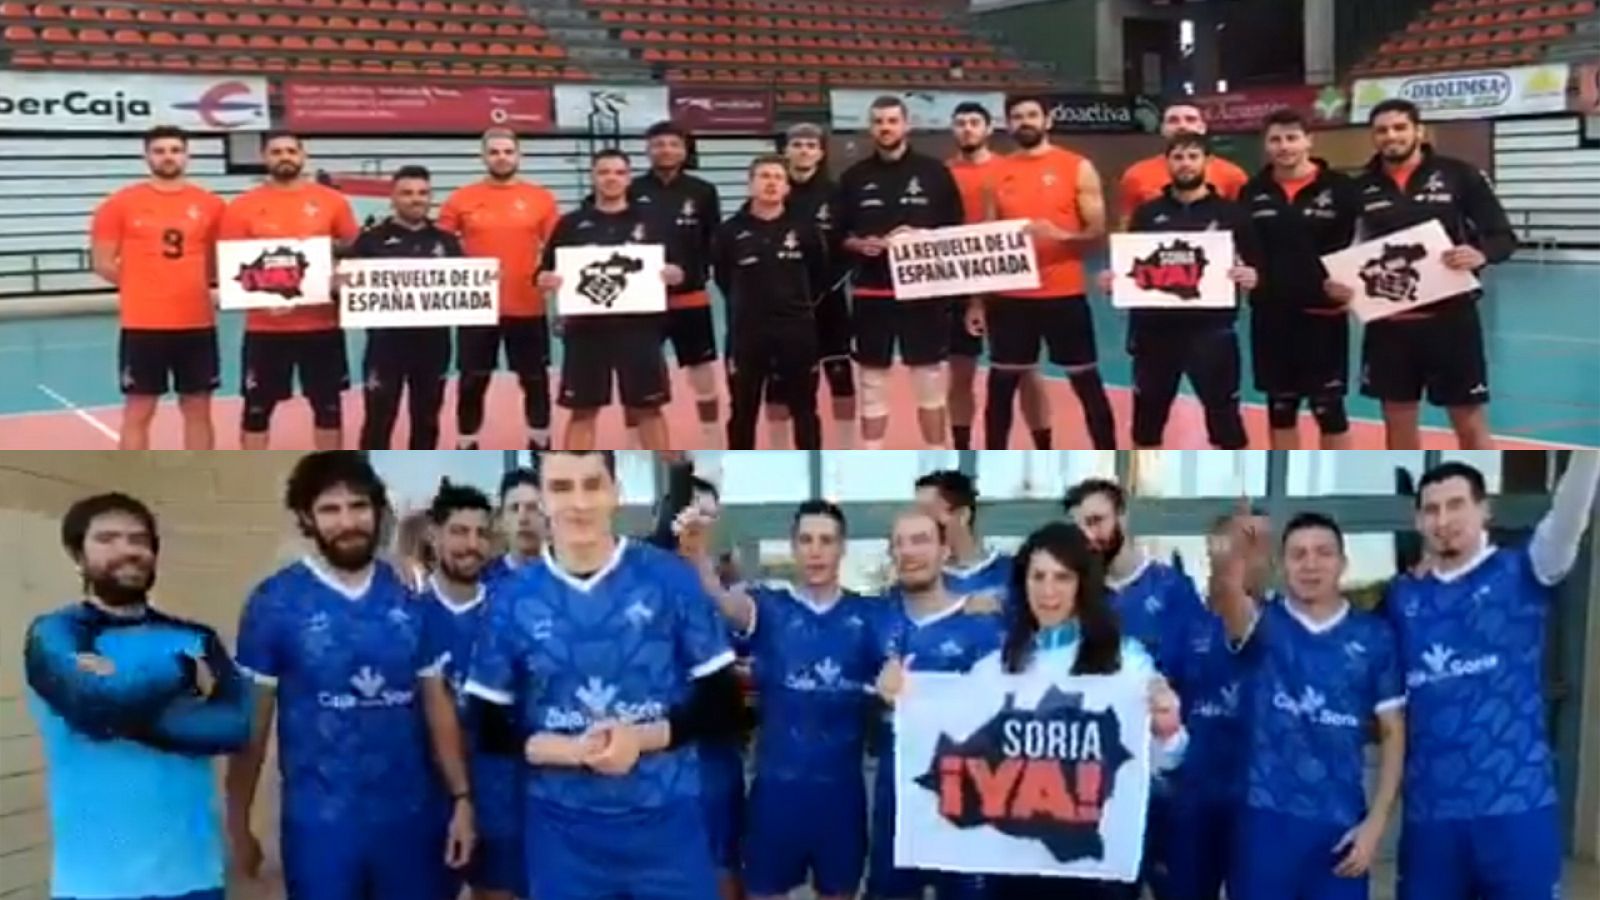 Las plantillas del Club Voleibol Teruel (arriba) y Río Duero Soria llaman a participar en la "revuelta de la España vaciada".